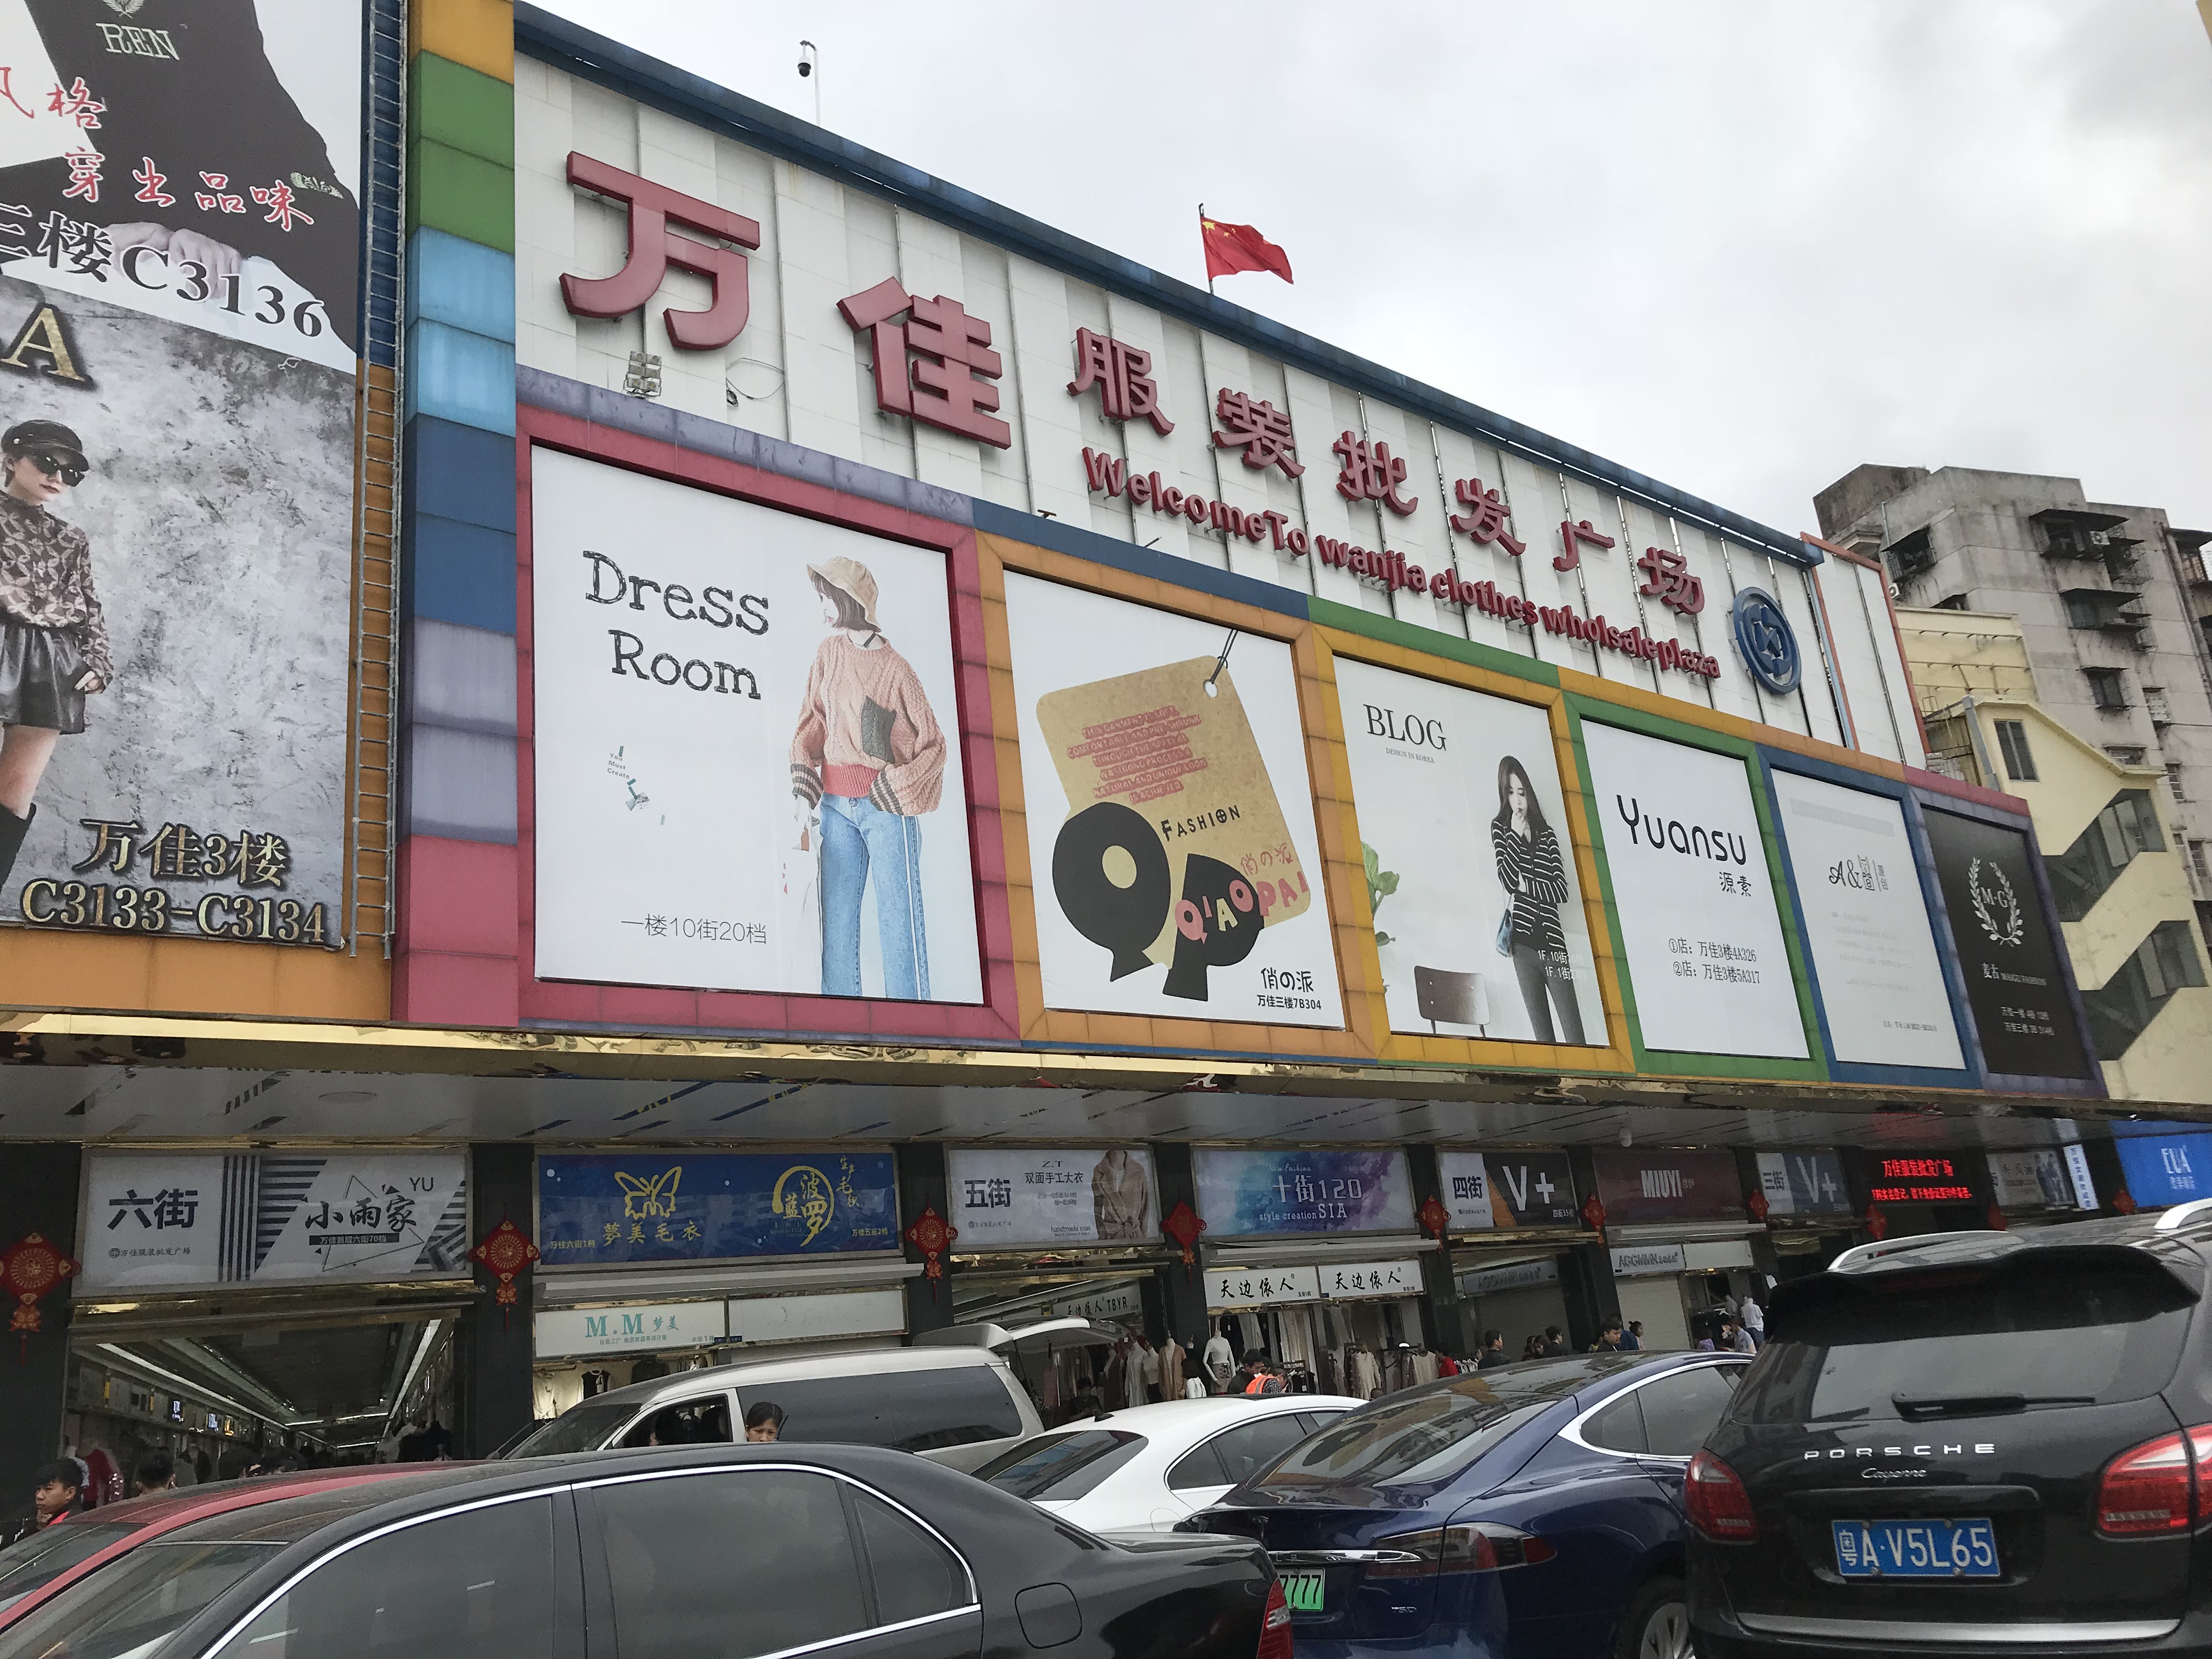 大年开初,广州沙河服装批发市场人潮涌动!